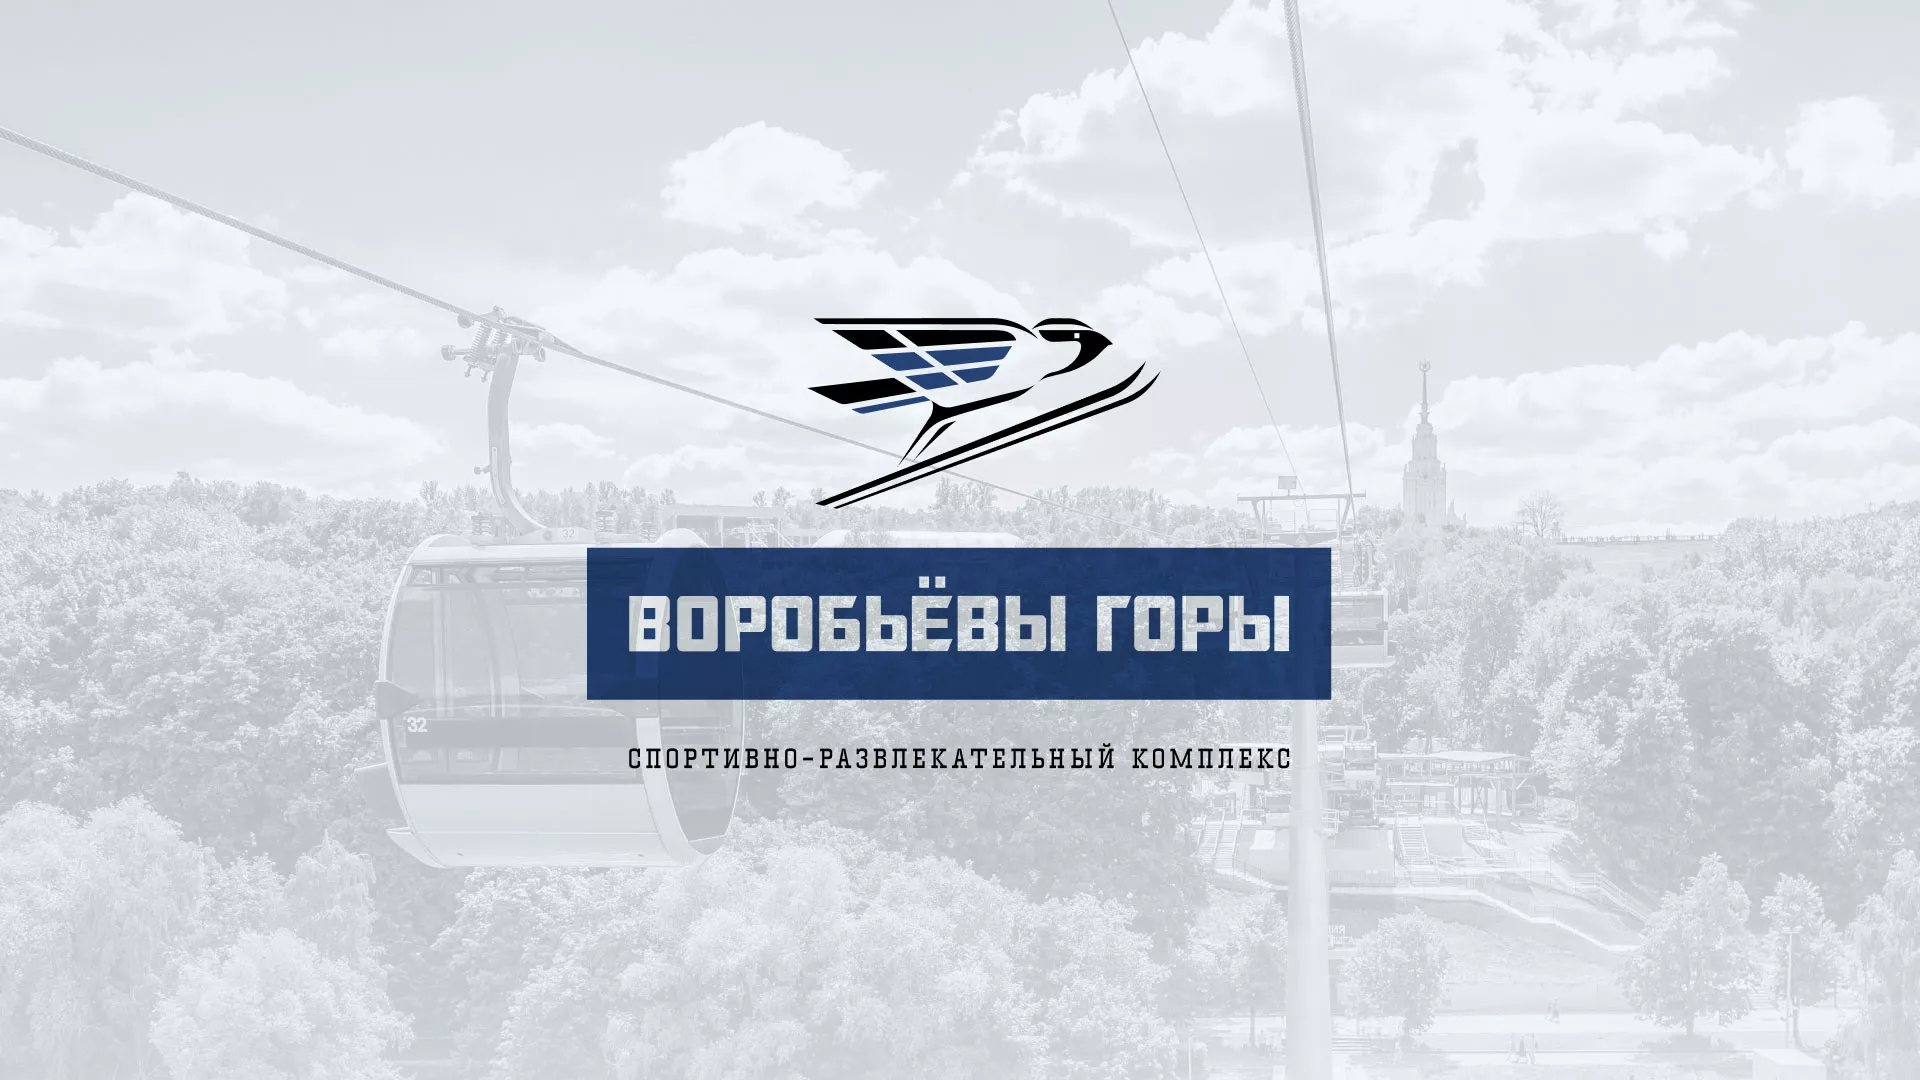 Разработка сайта в Нолинске для спортивно-развлекательного комплекса «Воробьёвы горы»